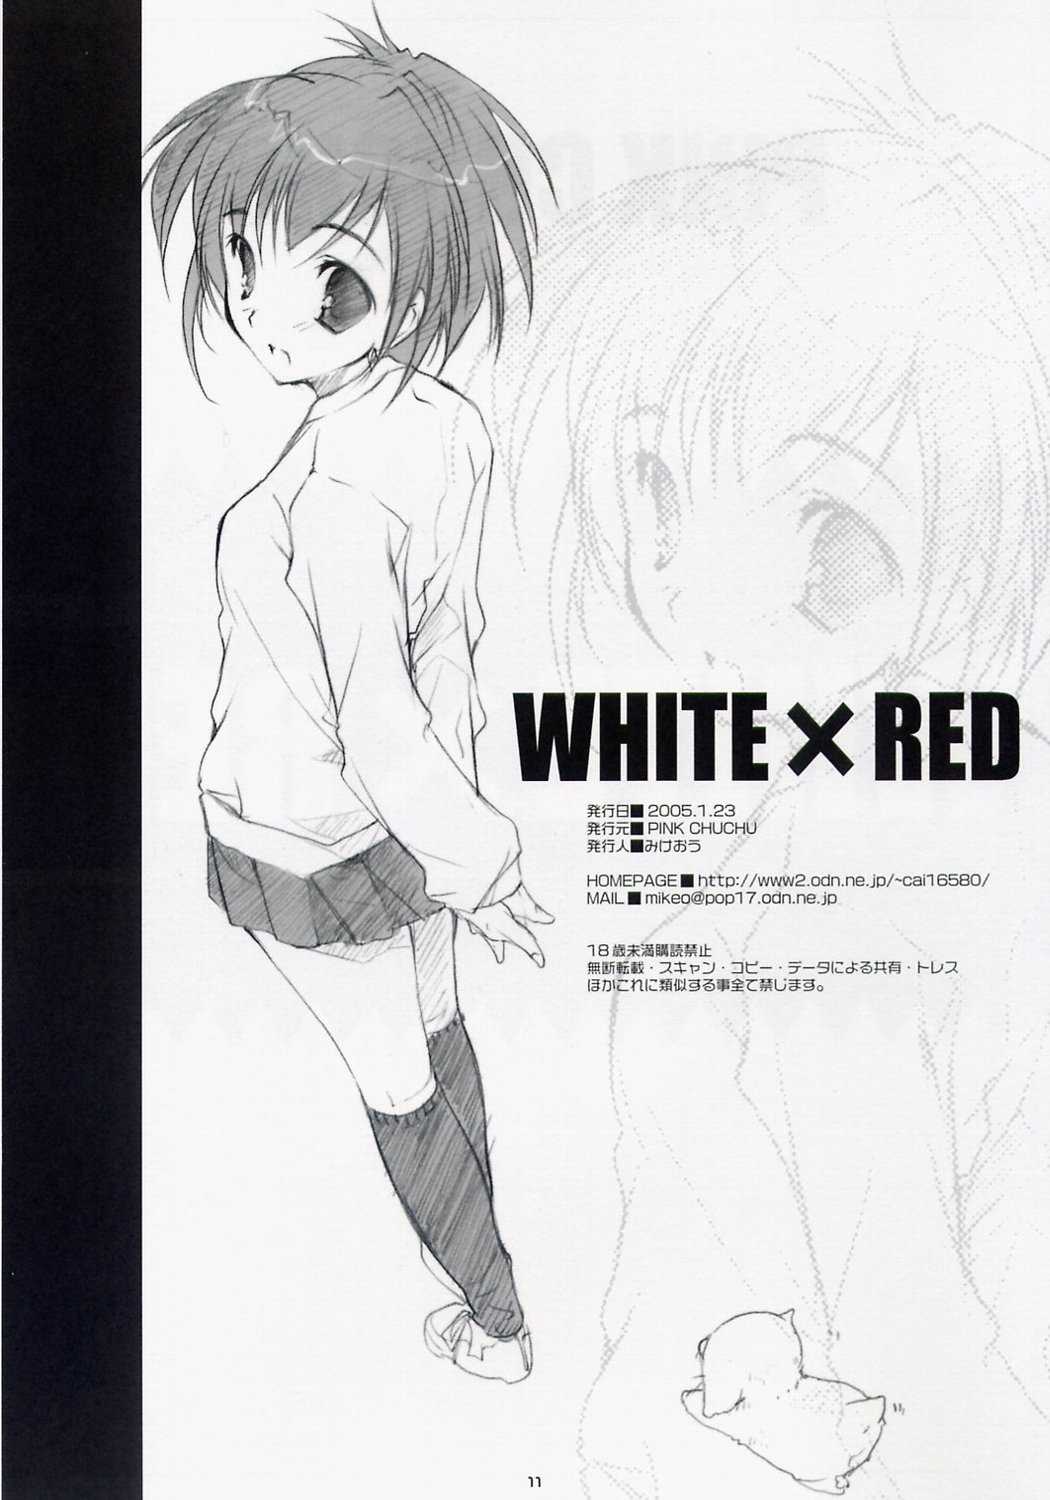 [Pink Chuchu (Mikeou)] - White x Red (ichigo 100%) 